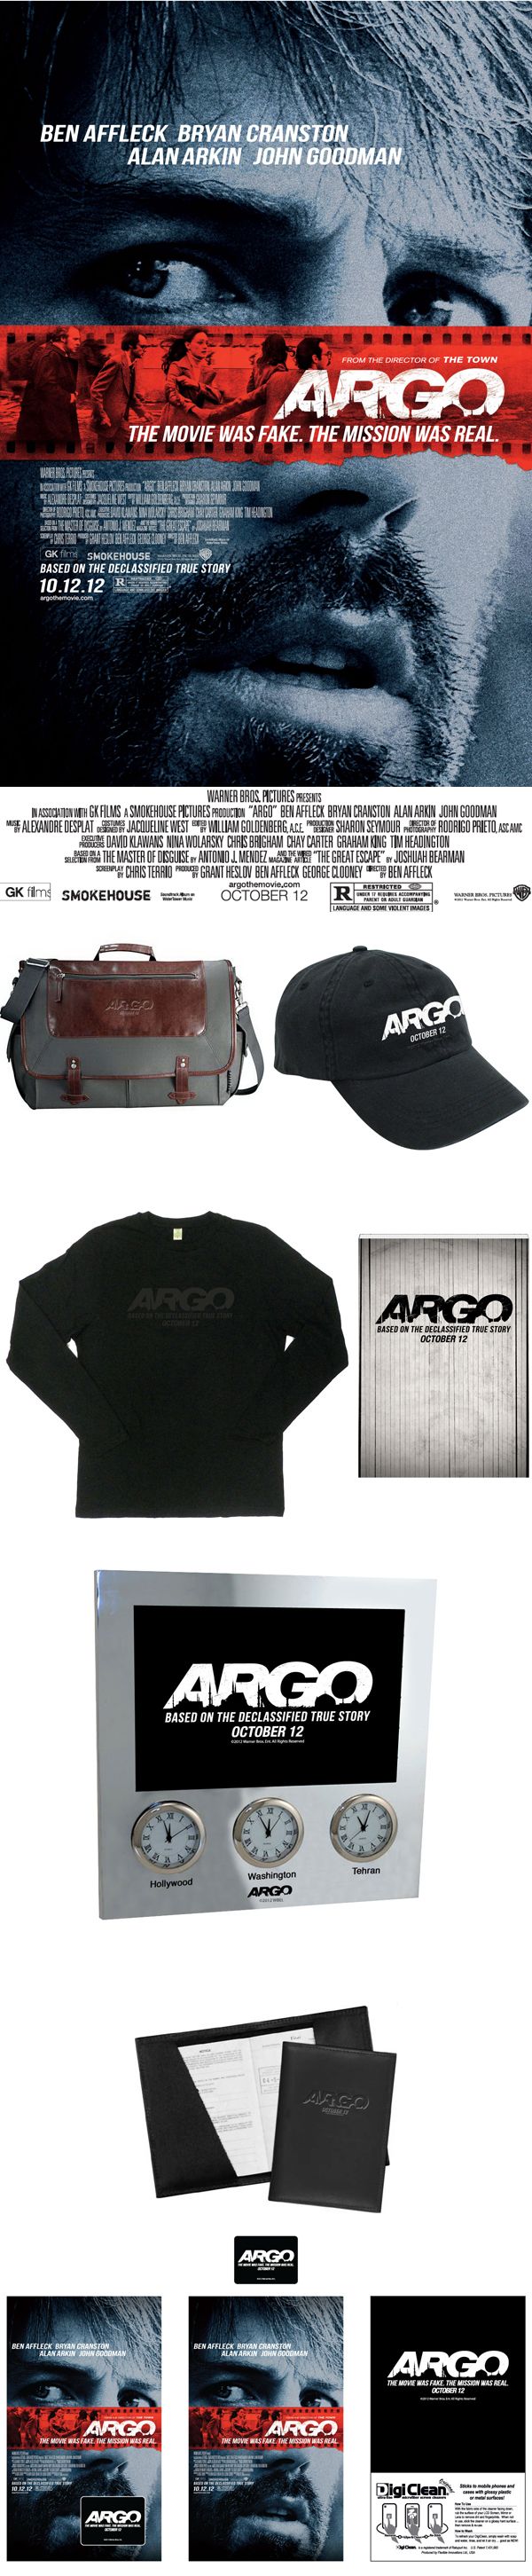 argo-giveaway